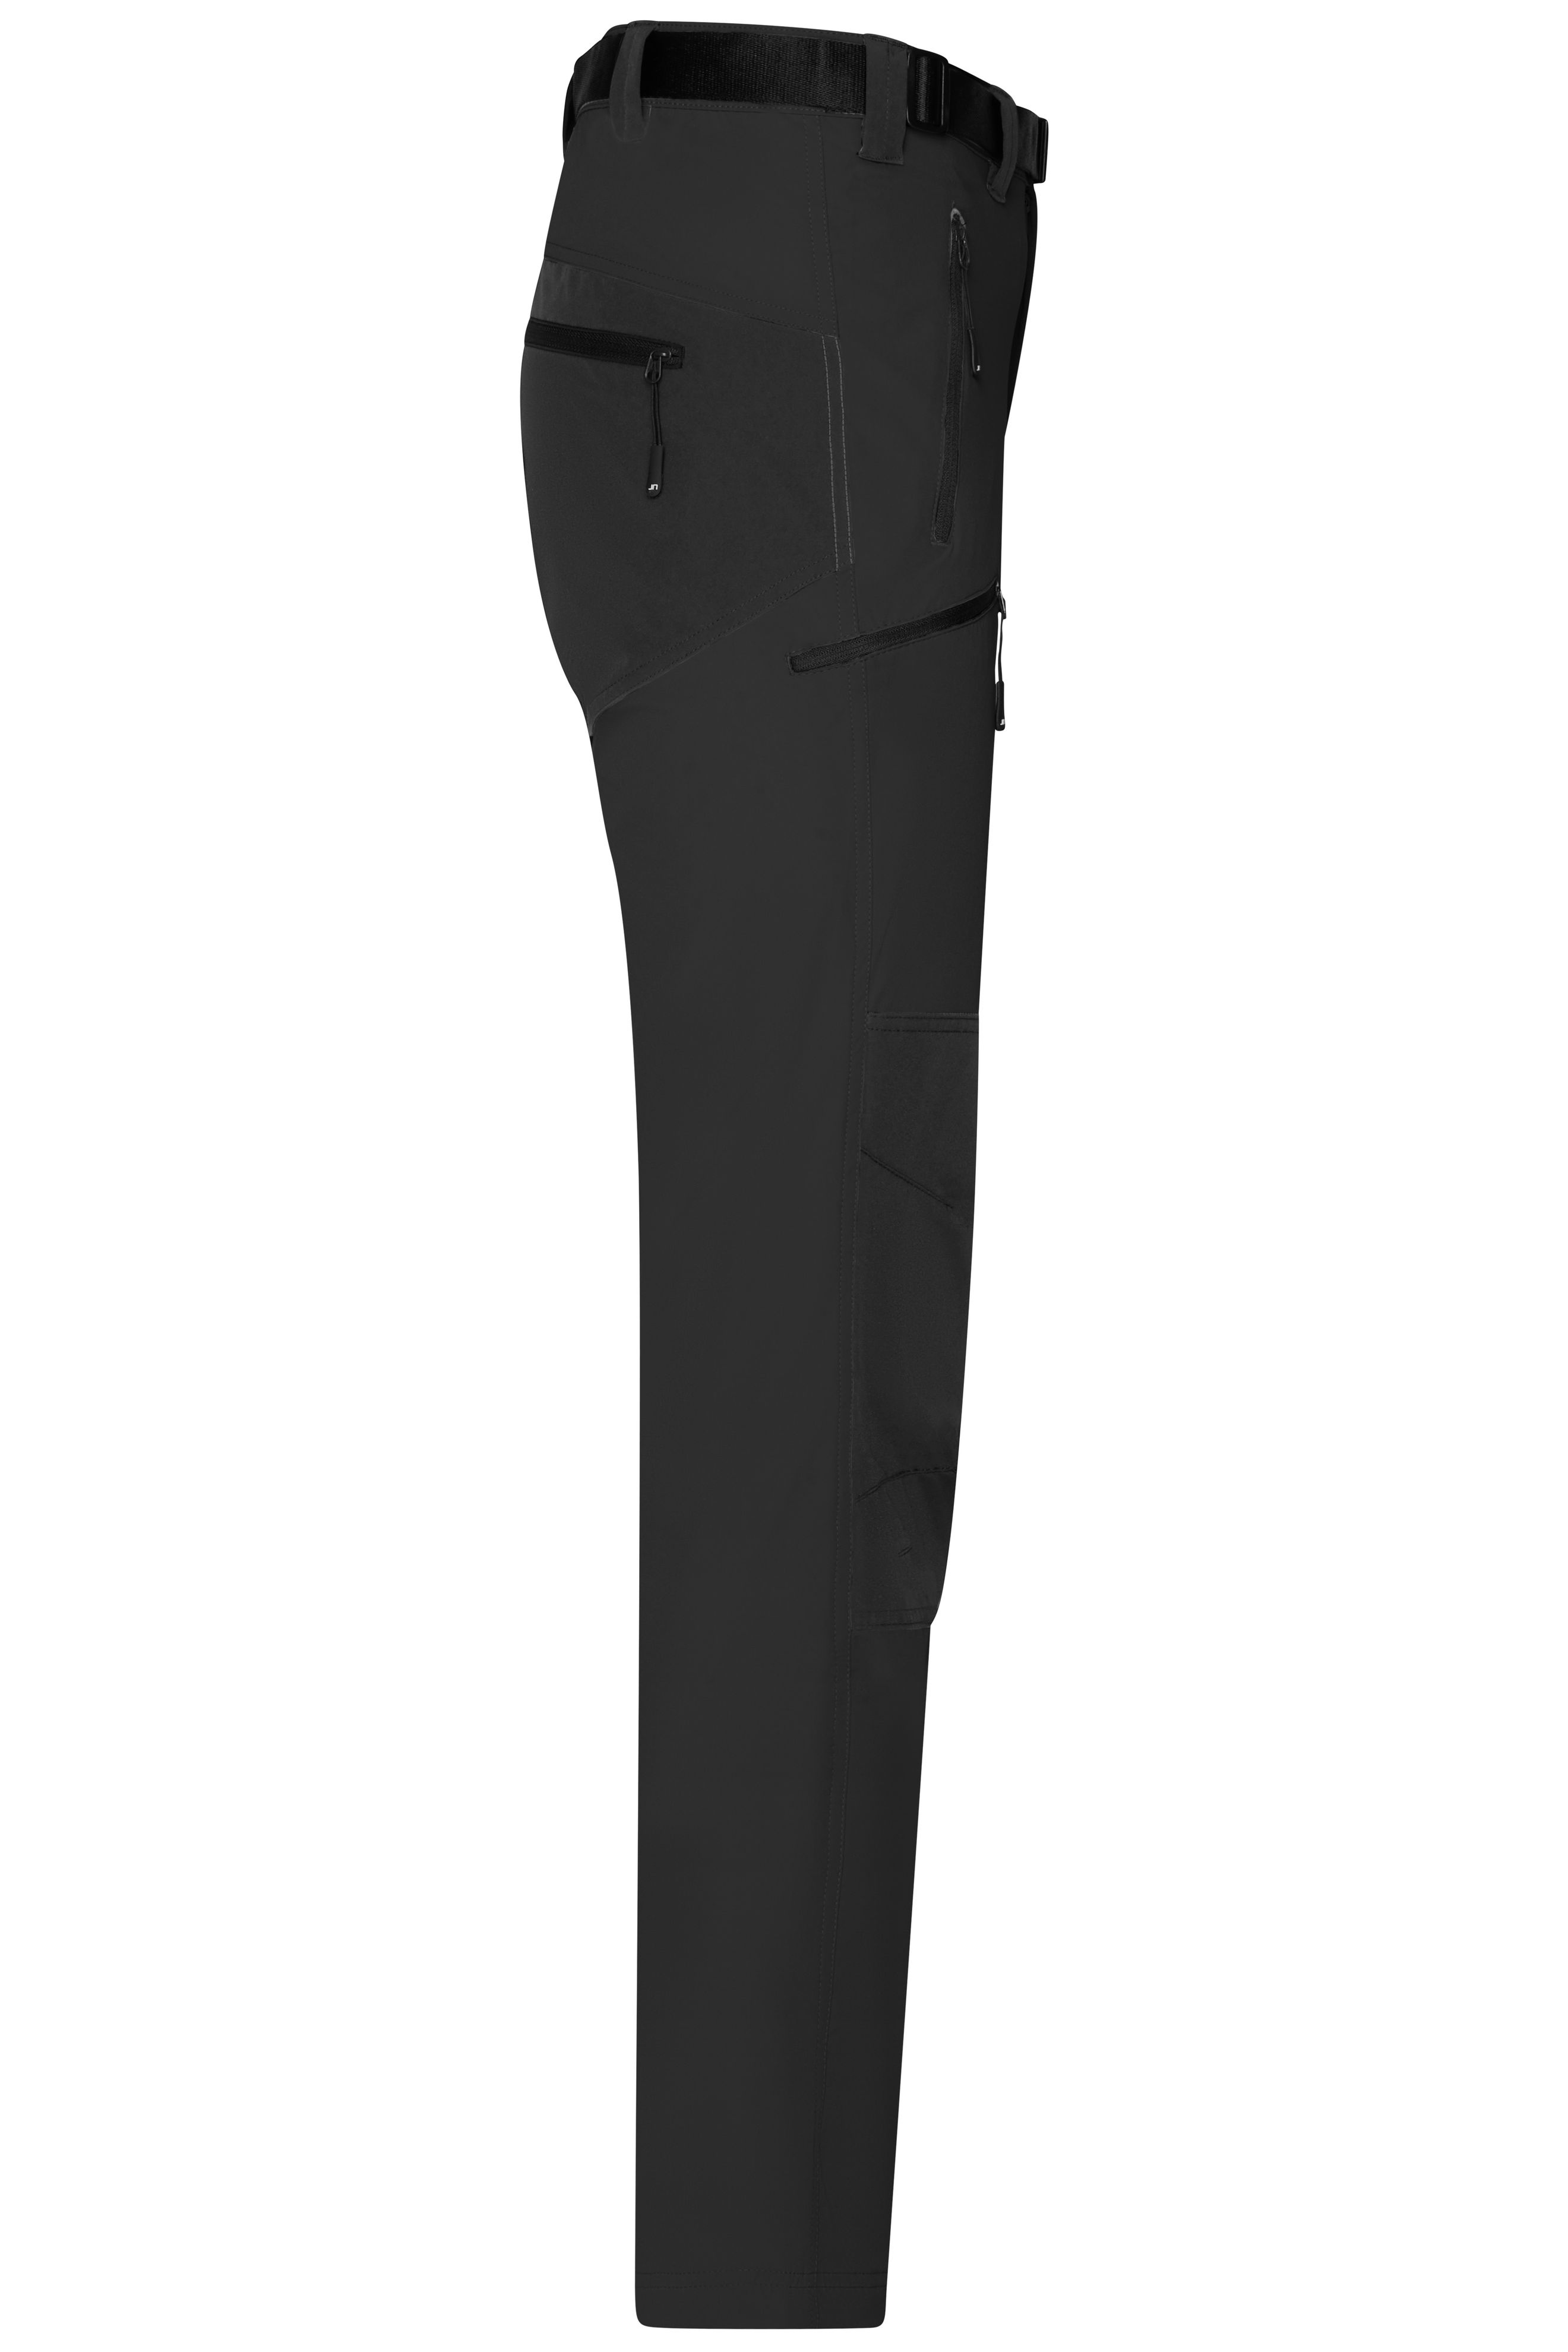 Men's Trekking Pants JN1206 Bi-elastische Outdoorhose in sportlicher Optik